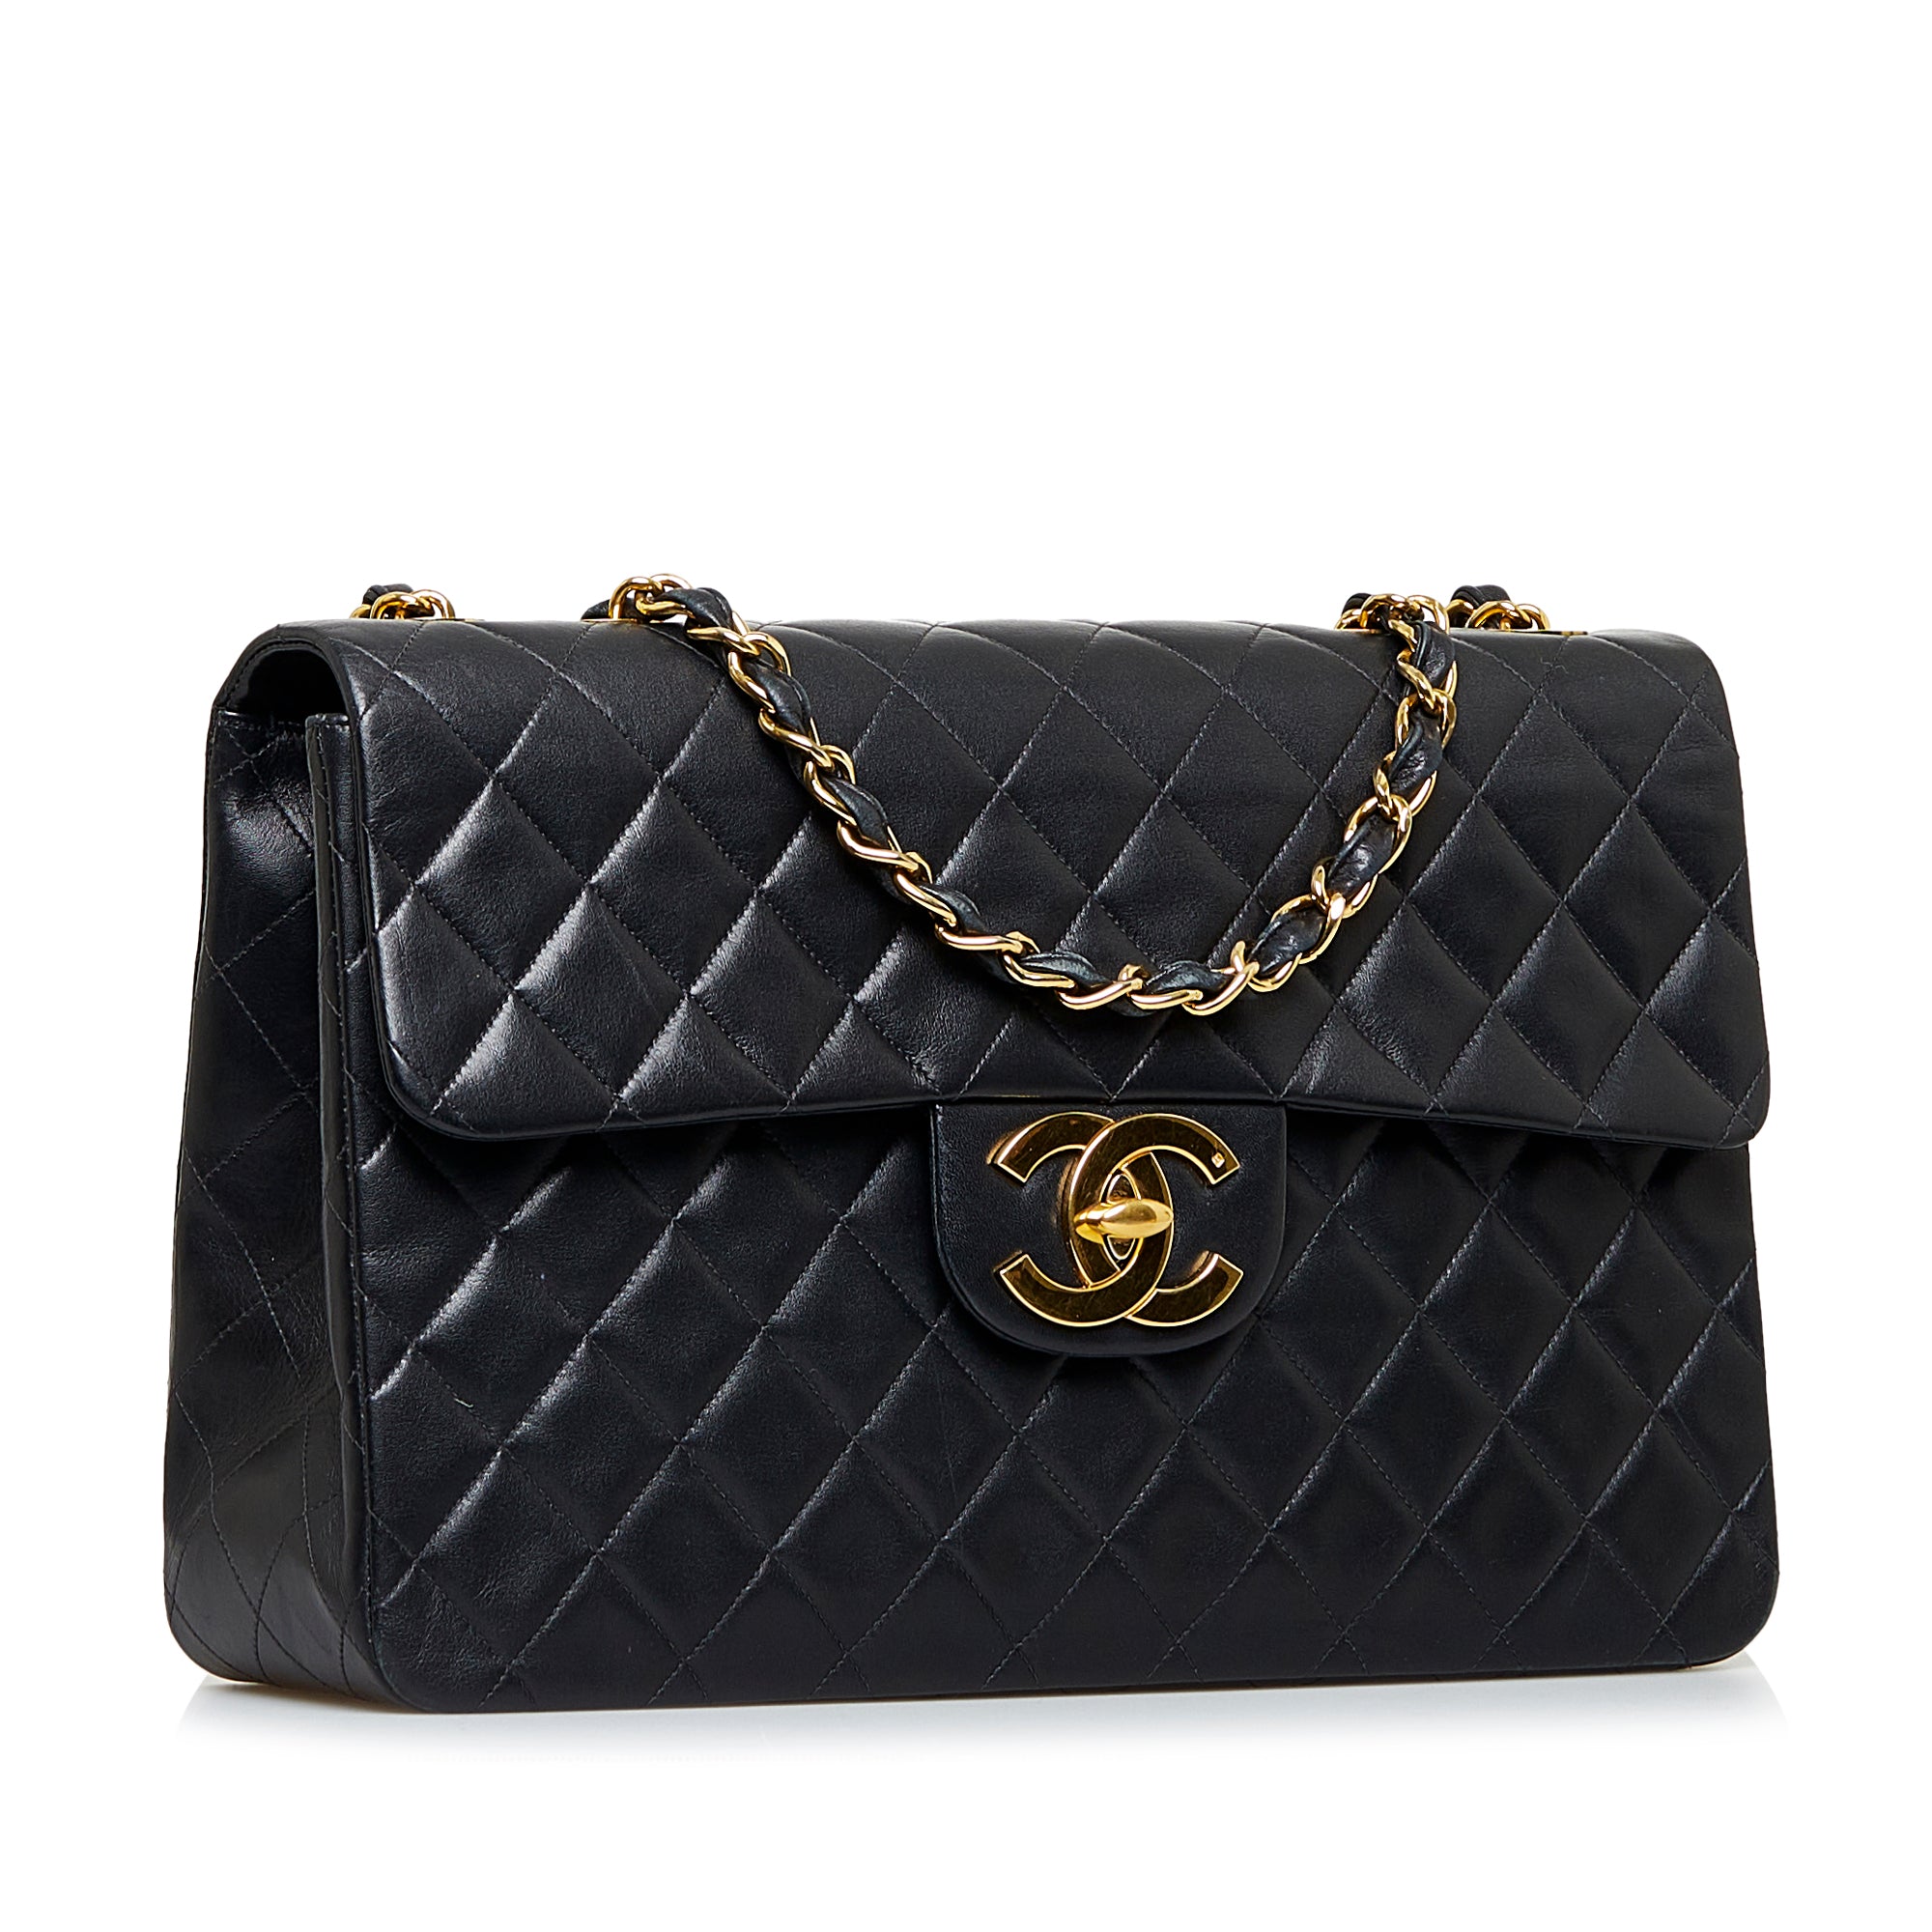 Chanel Maxi Classic Handbag